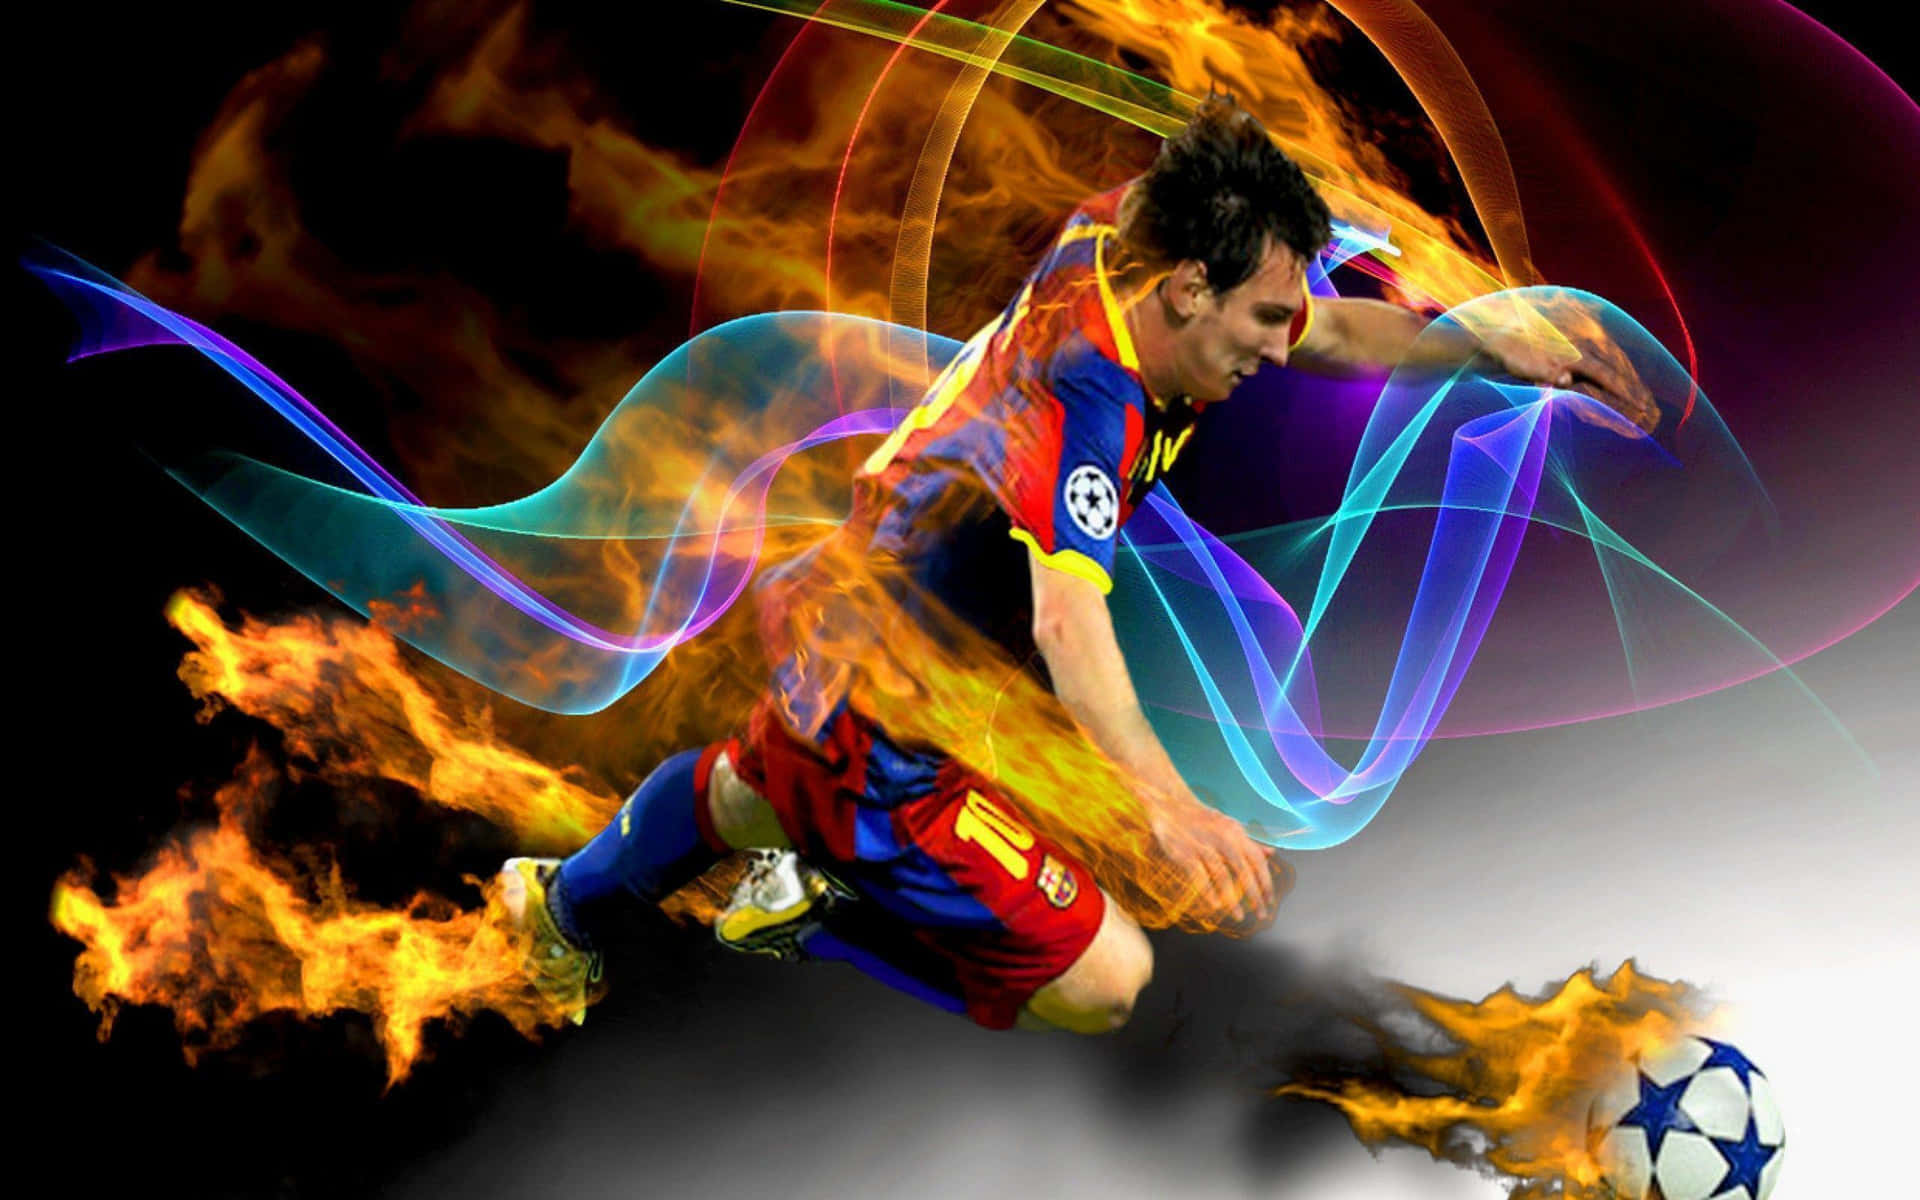 Imágenesdel Futbolista Lionel Messi En Llamas.